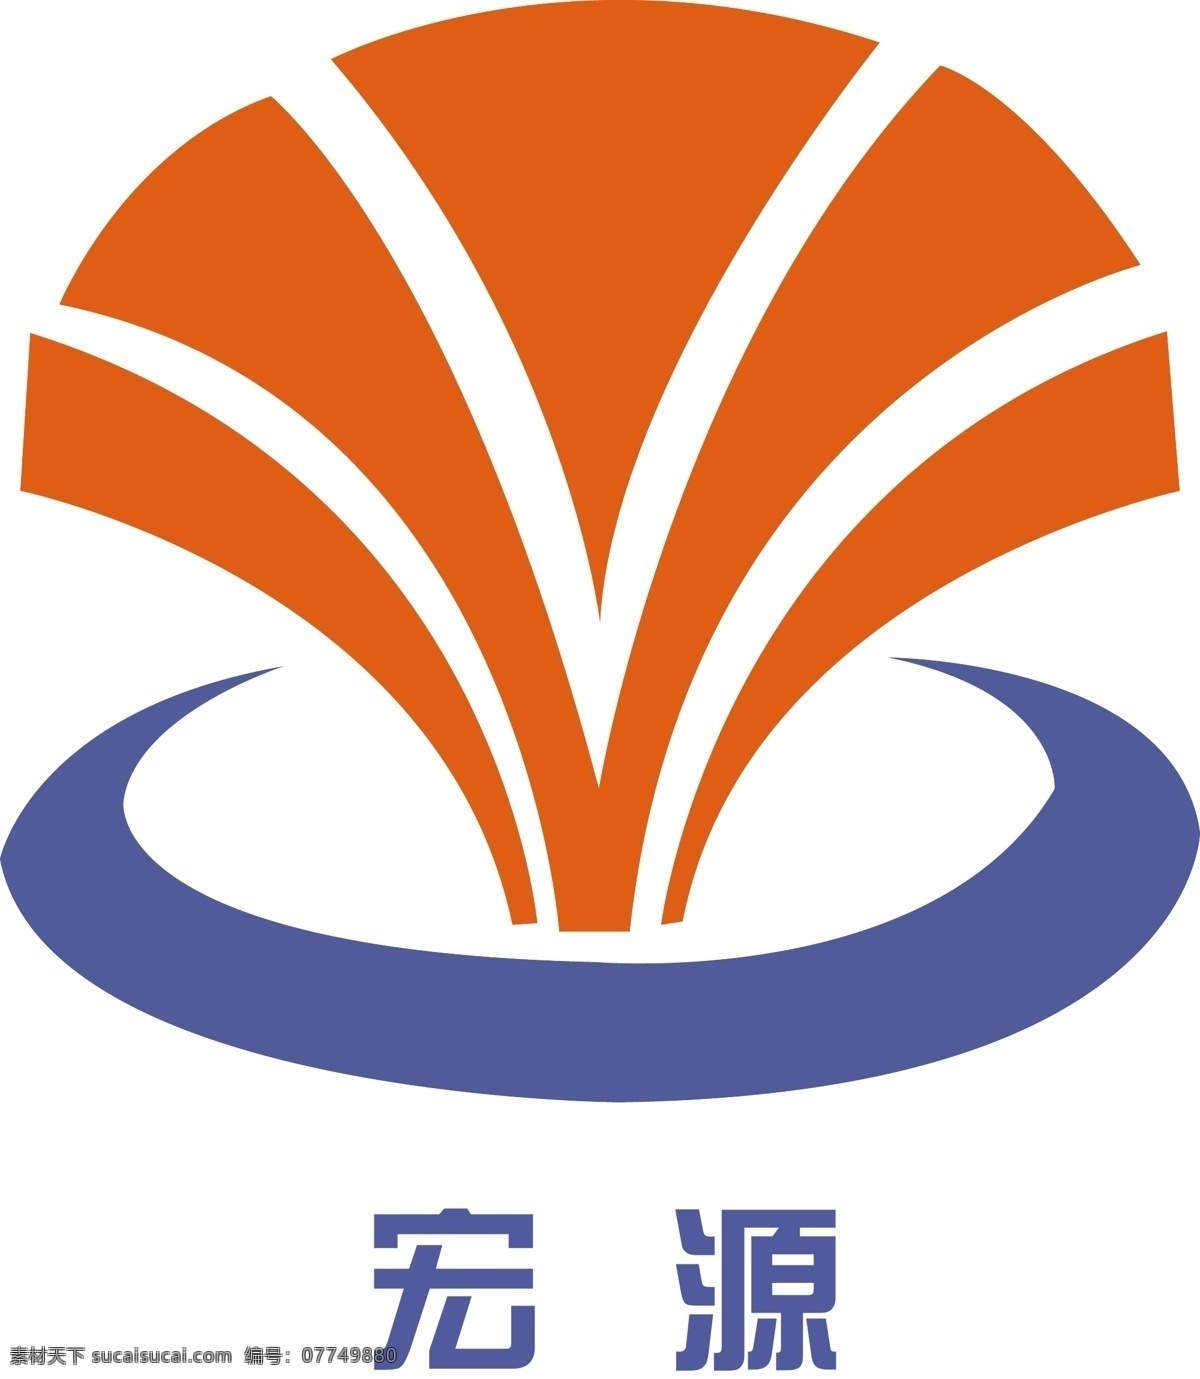 宏源logo 暝磍ogo 企业 logo 标志 标识标志图标 矢量 白色